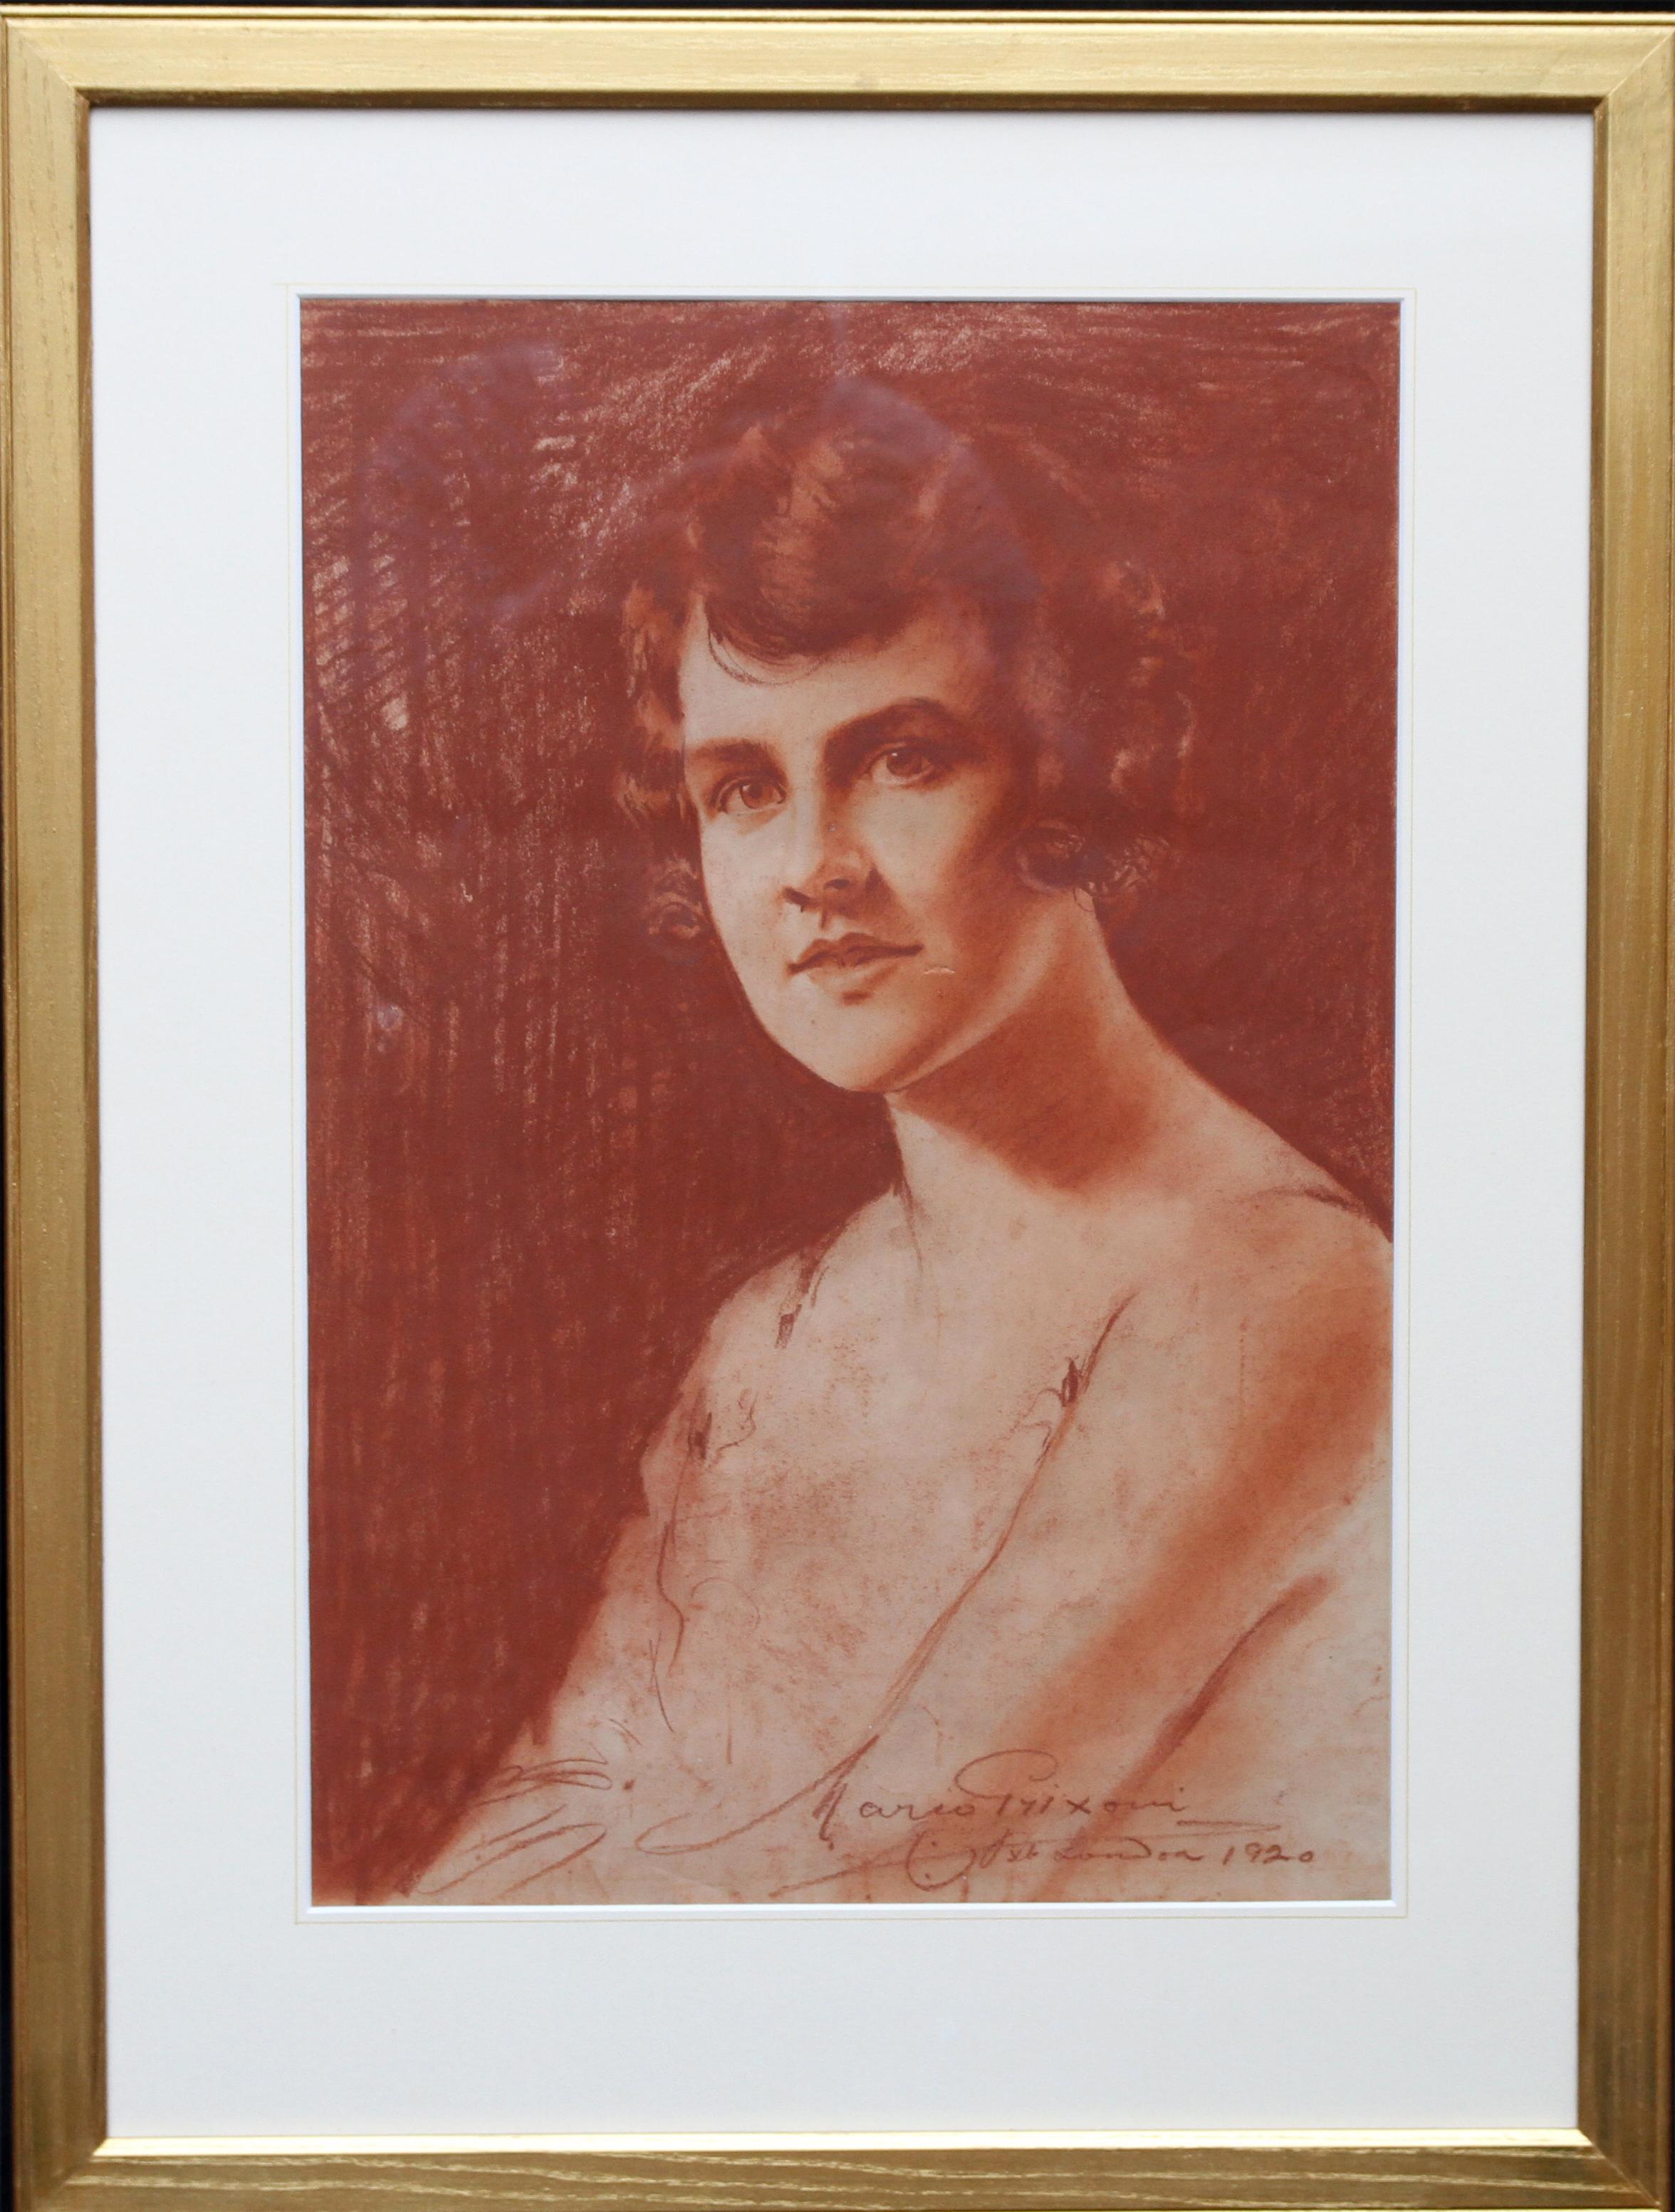 Portrait of a Lady - Roaring twenties art female portrait chalk drawing